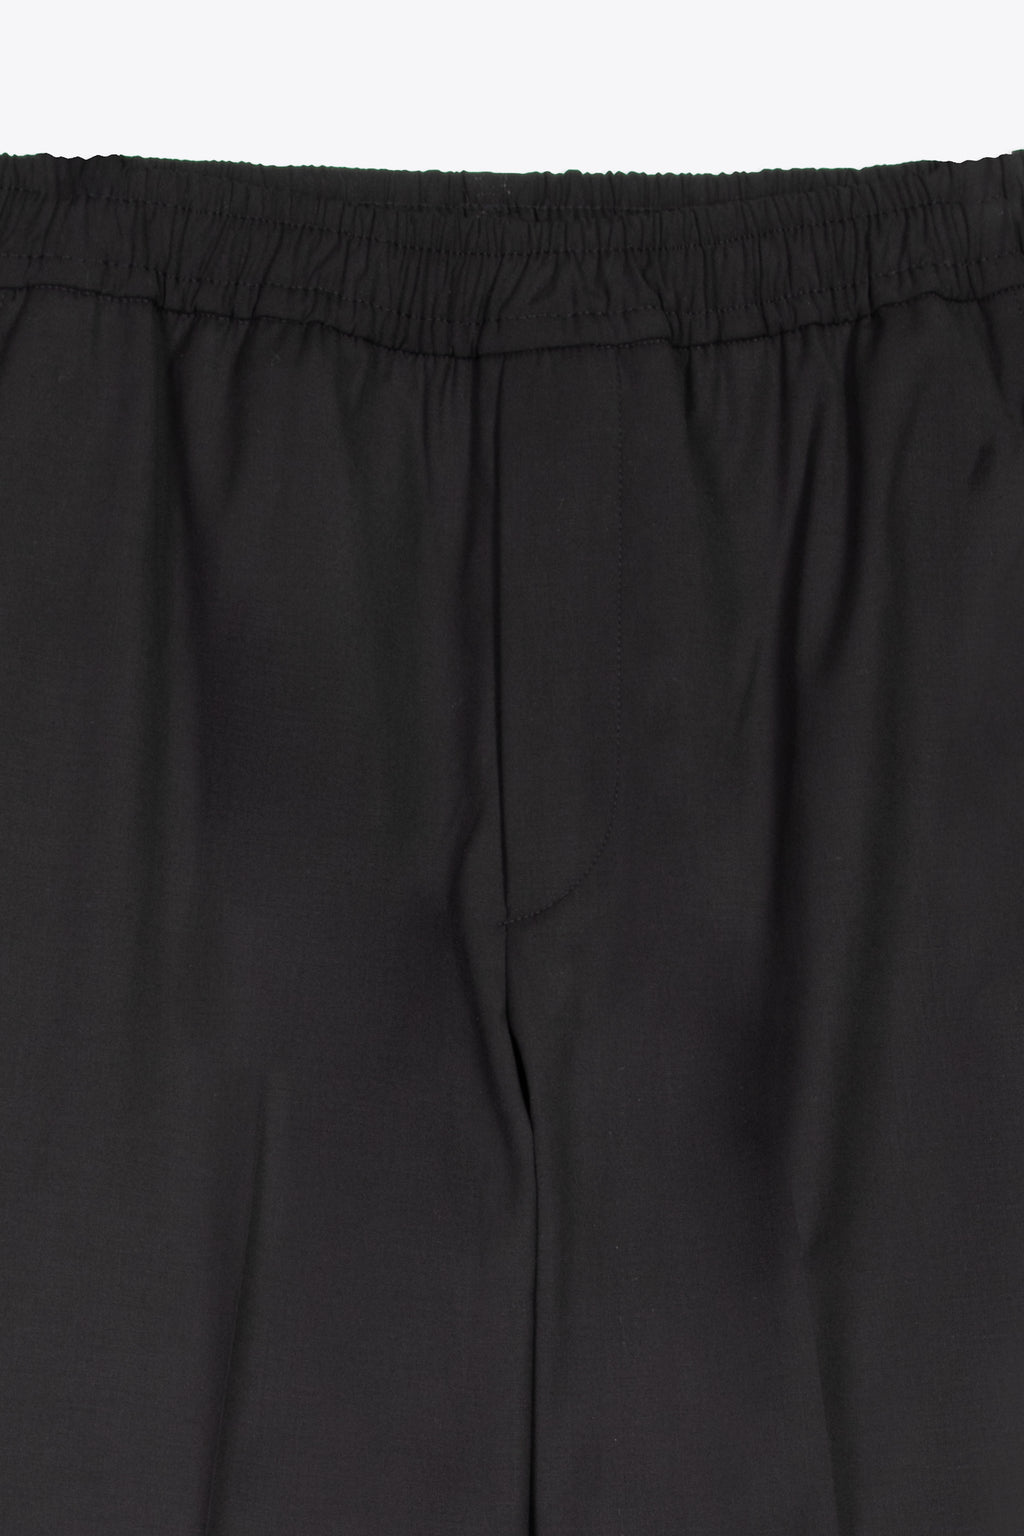 alt-image__Pantalone-in-cotone-nero-con-elastico-in-vita